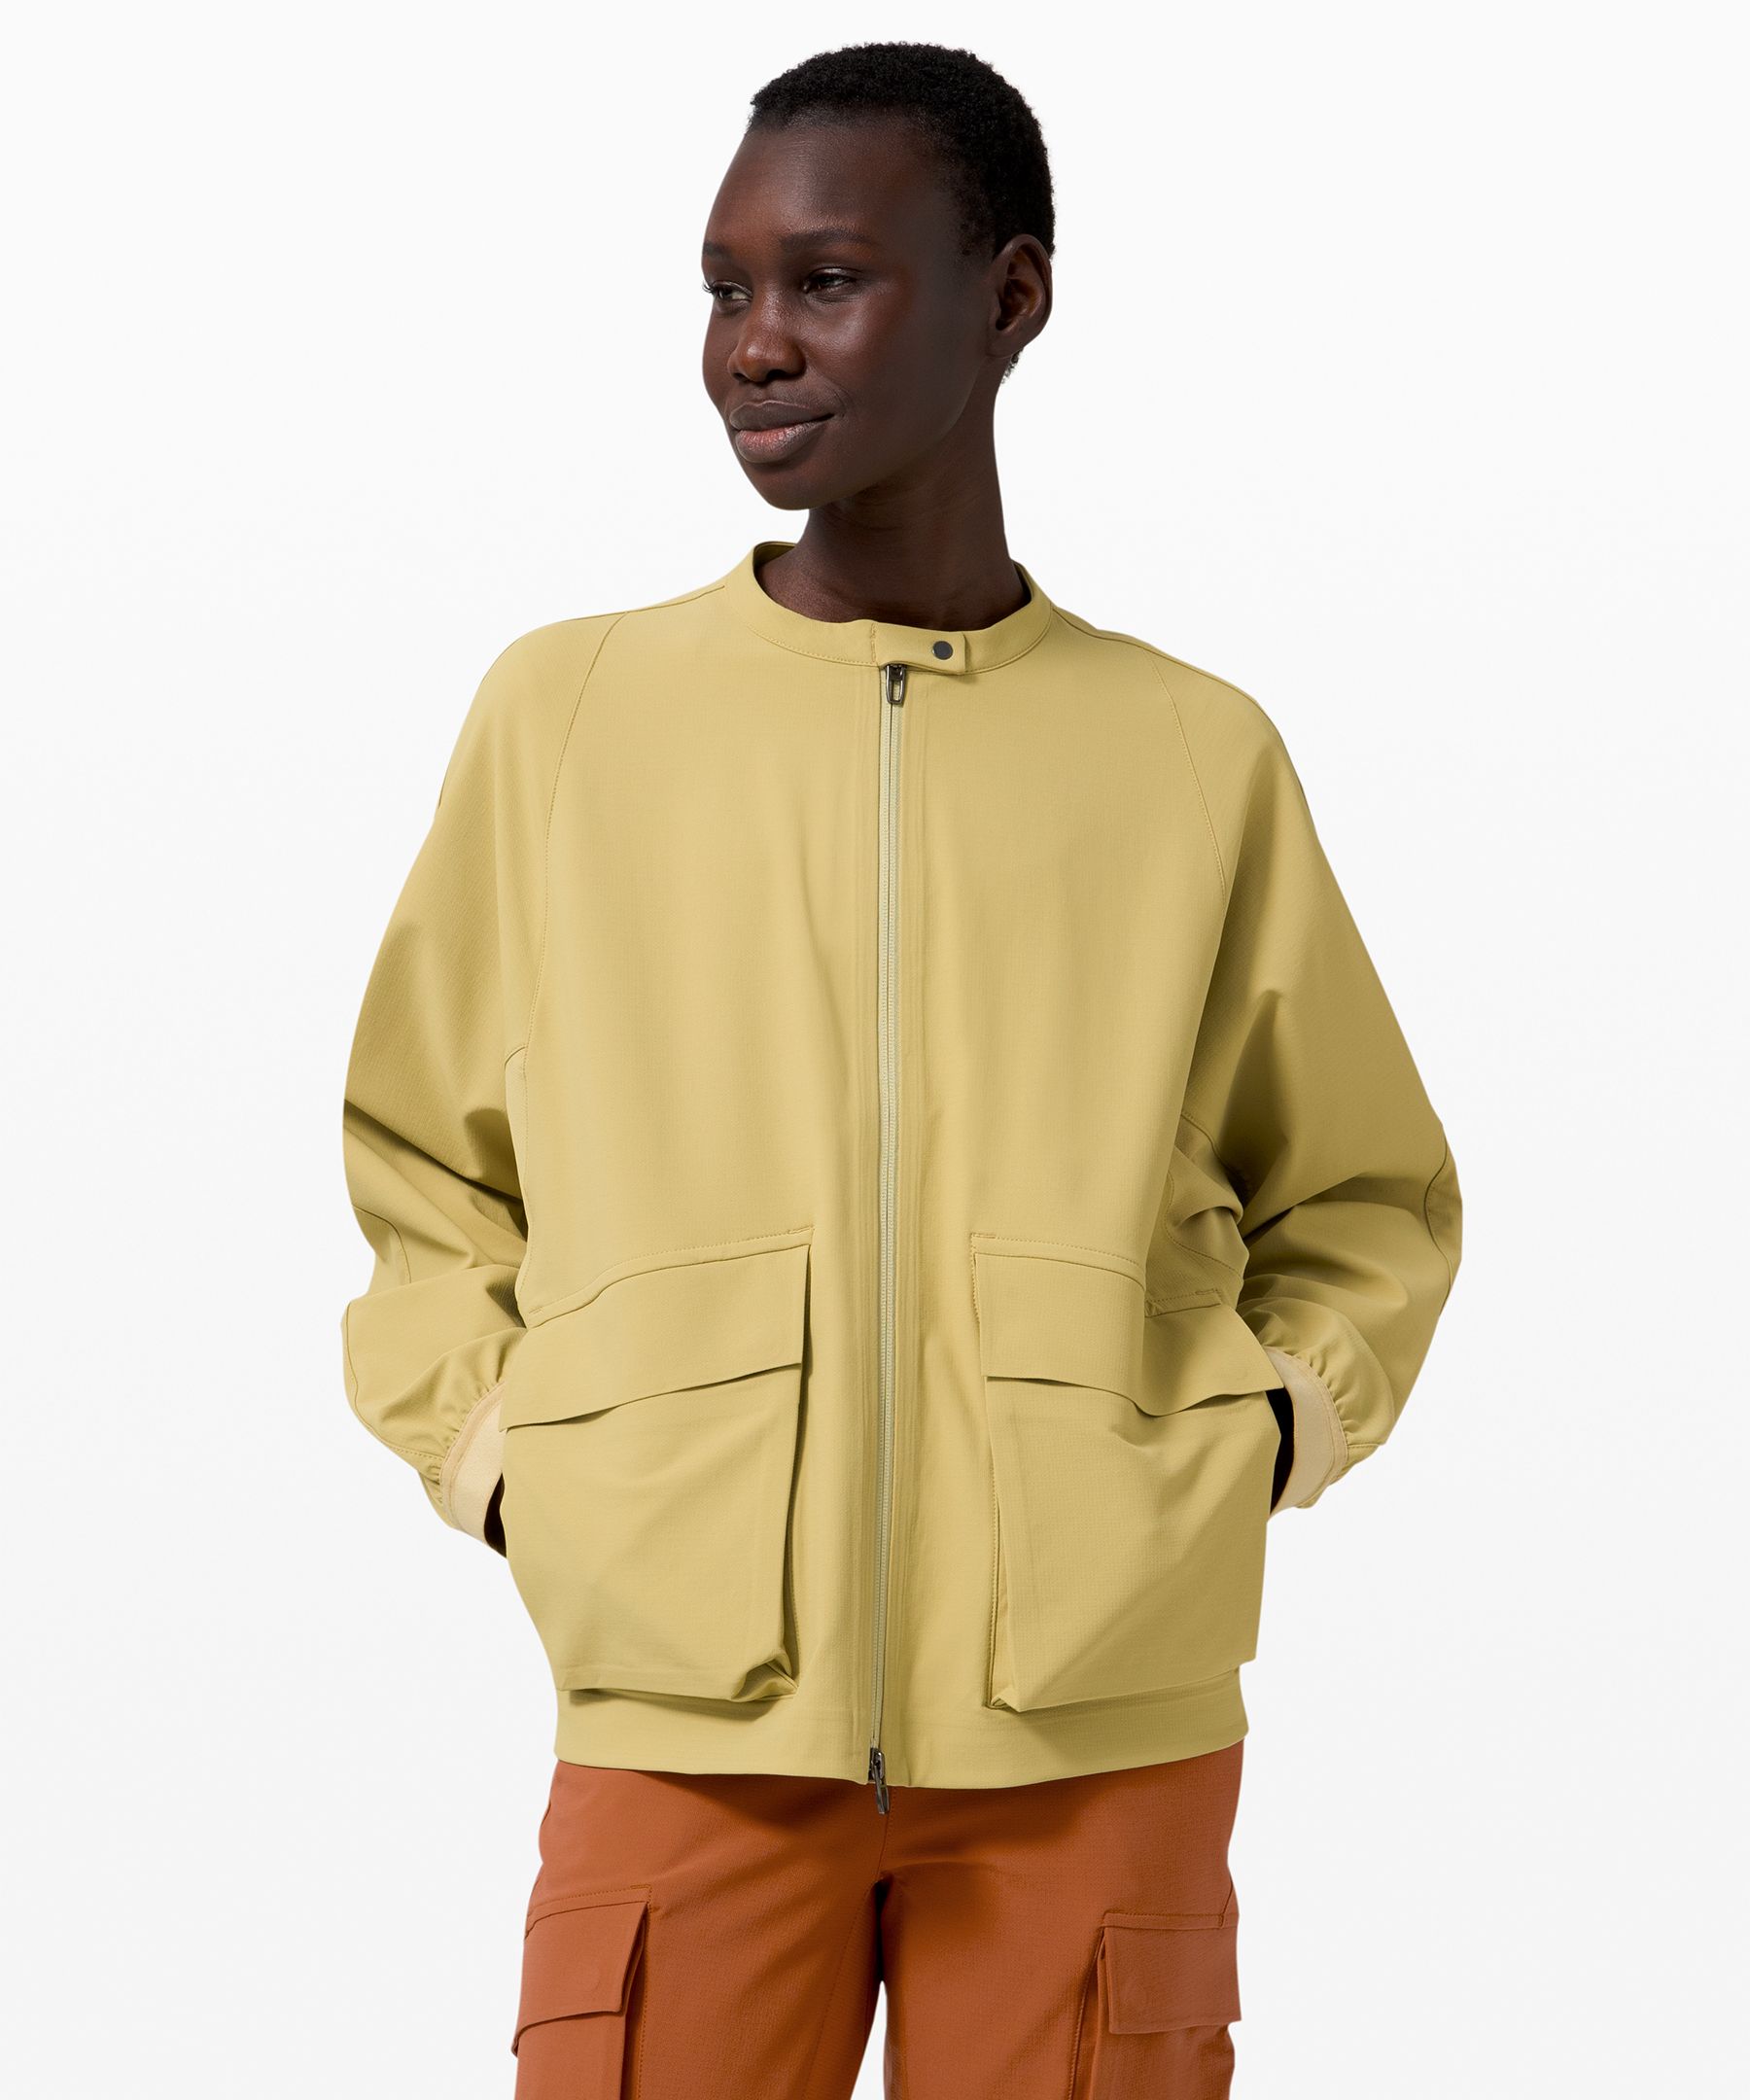 lululemon lab jacket